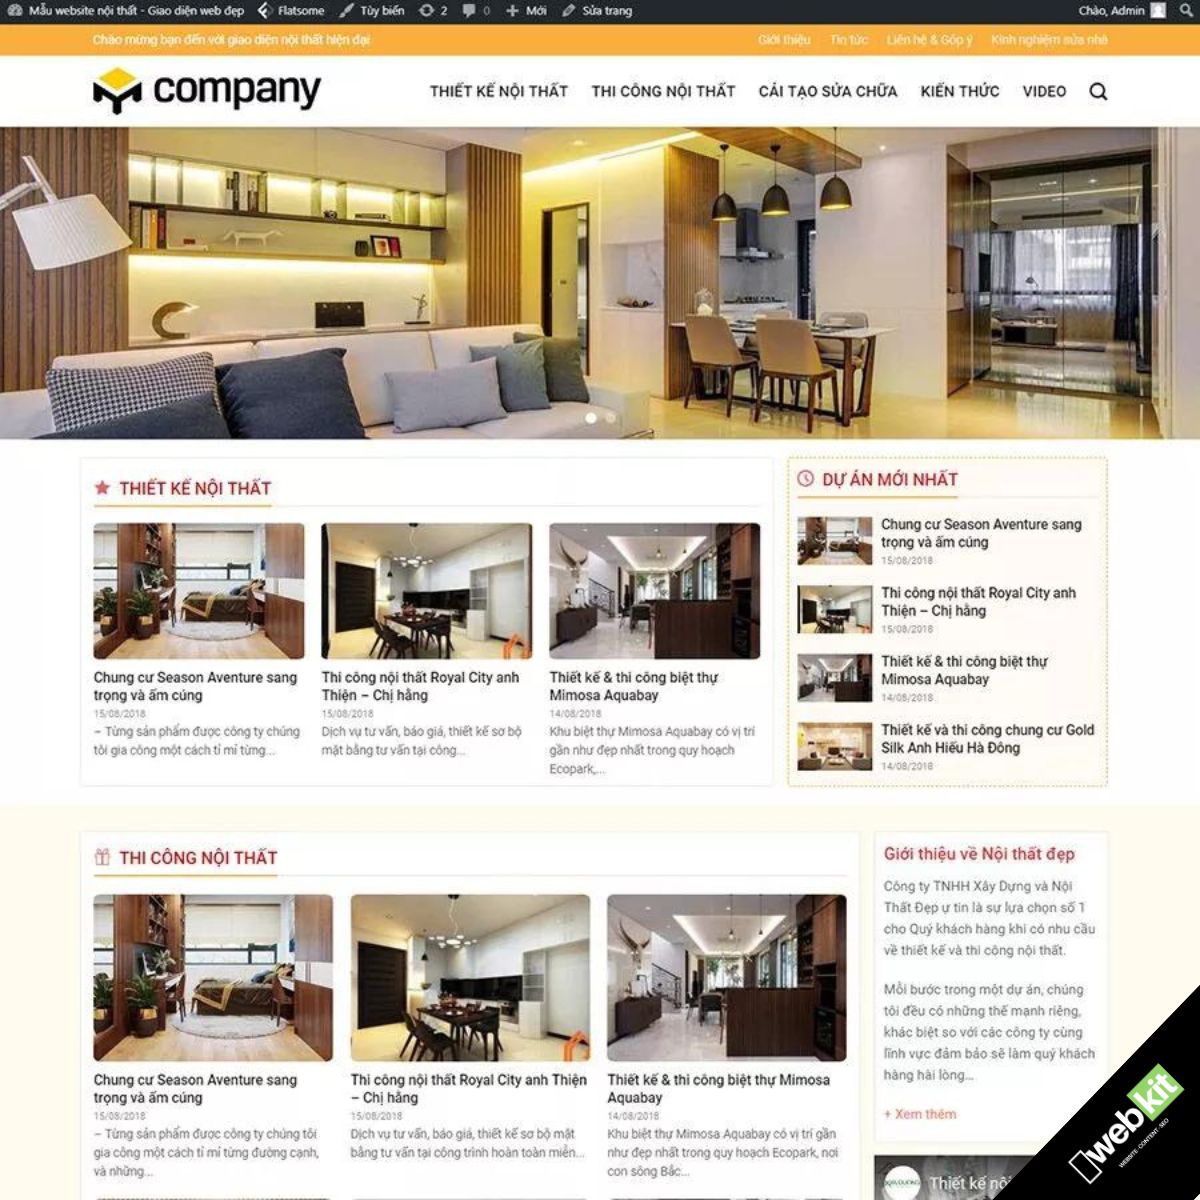 Thiết kế website thi công nội thất nhà cửa, văn phòng - WebKit 6127